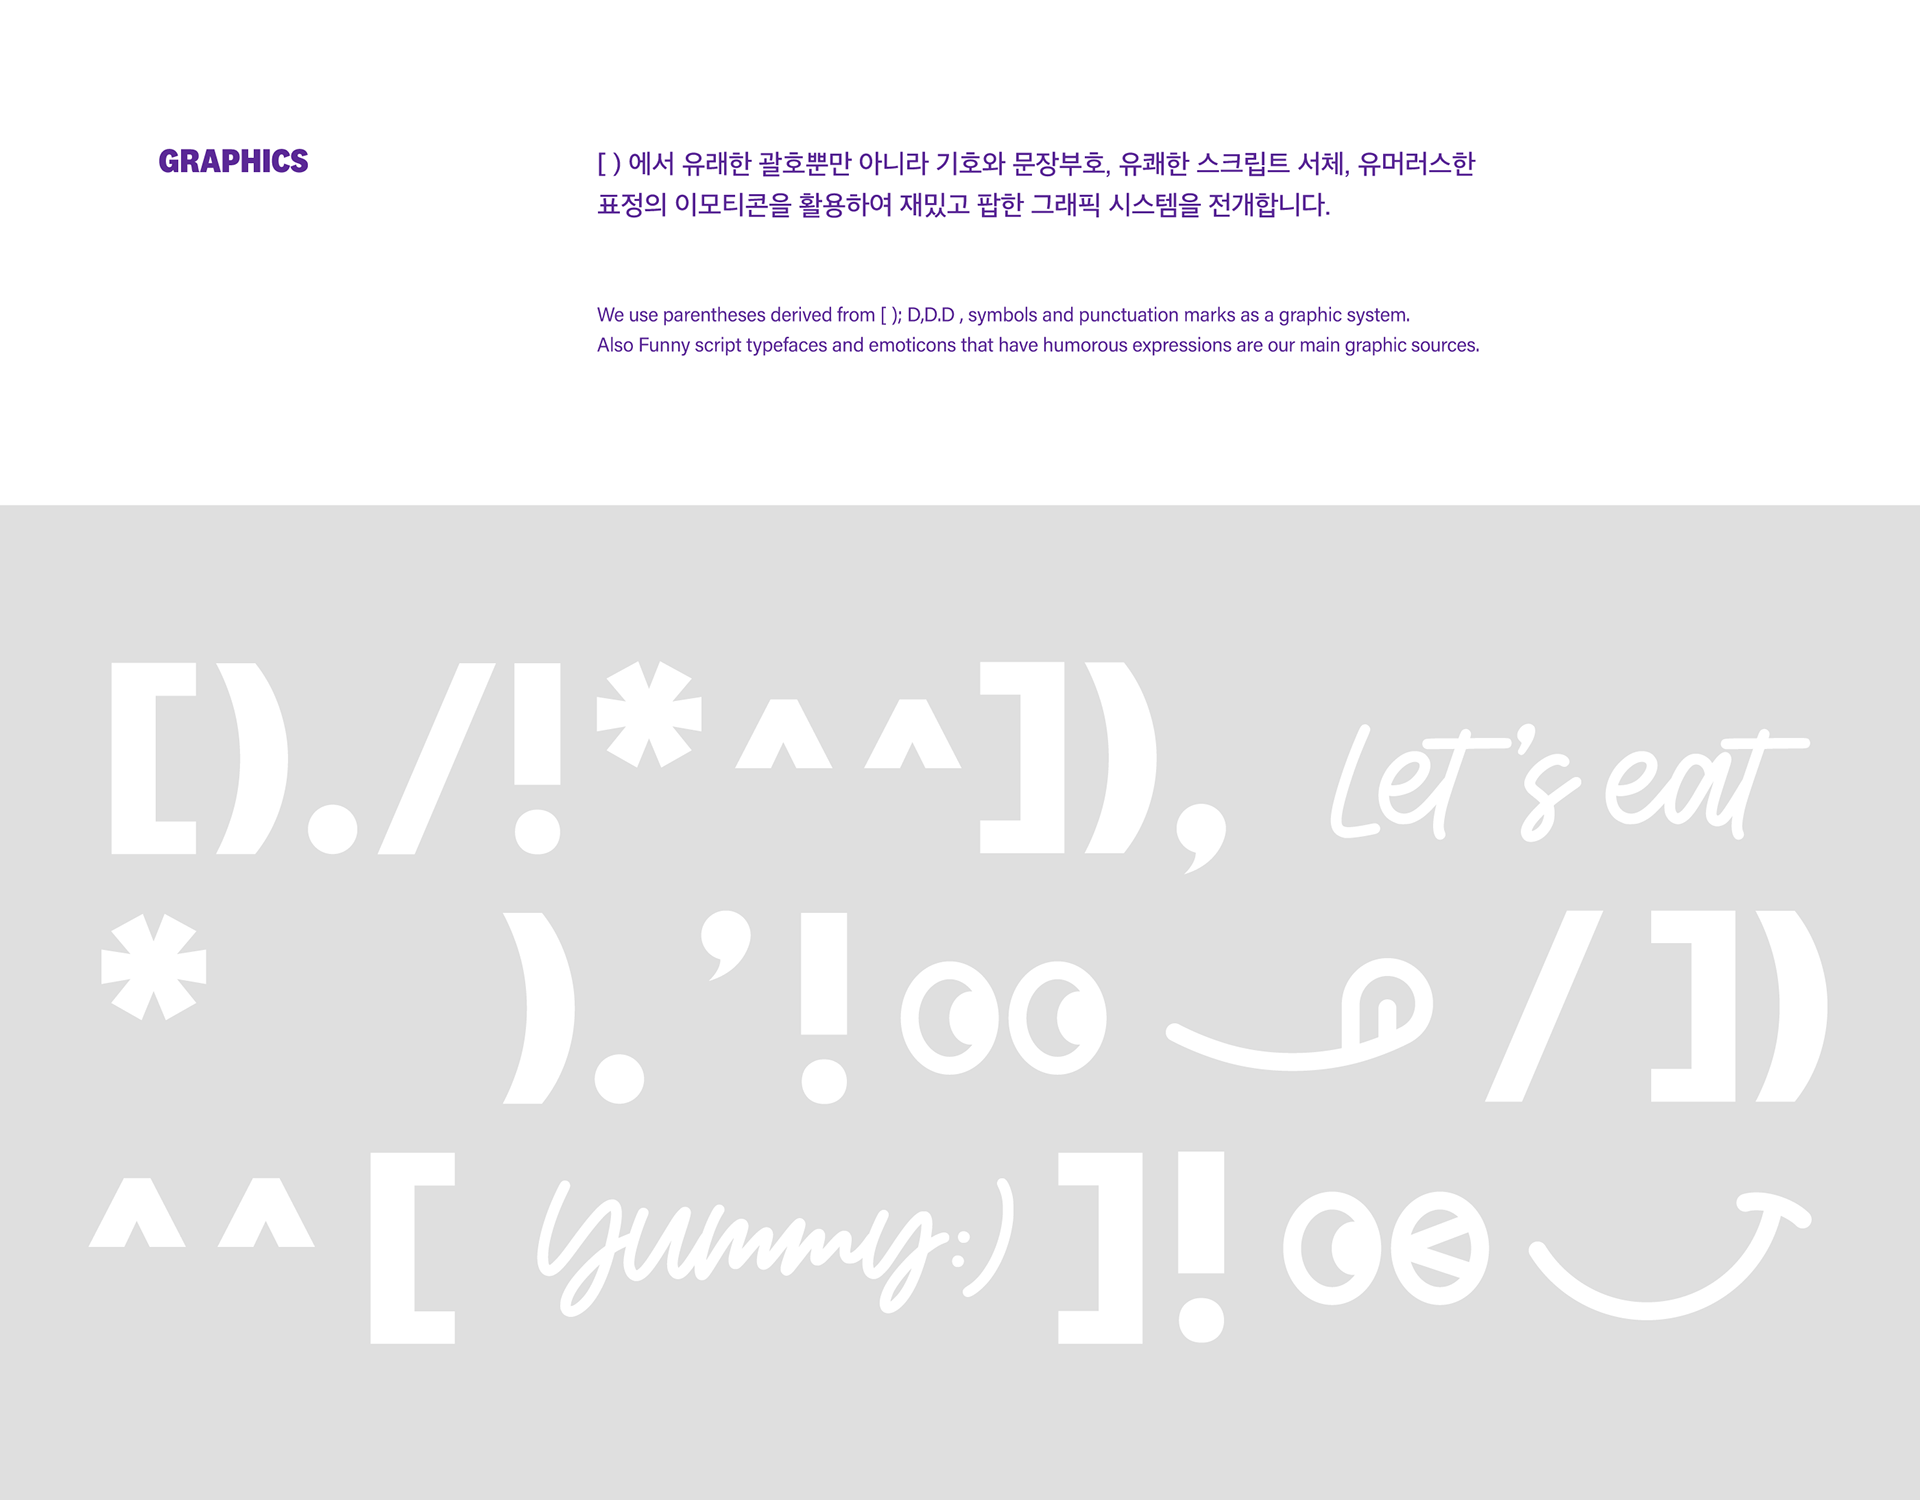 点 表情符号 乐趣 装帧设计艺术 朝鲜 包装设计 海报设计-09.png